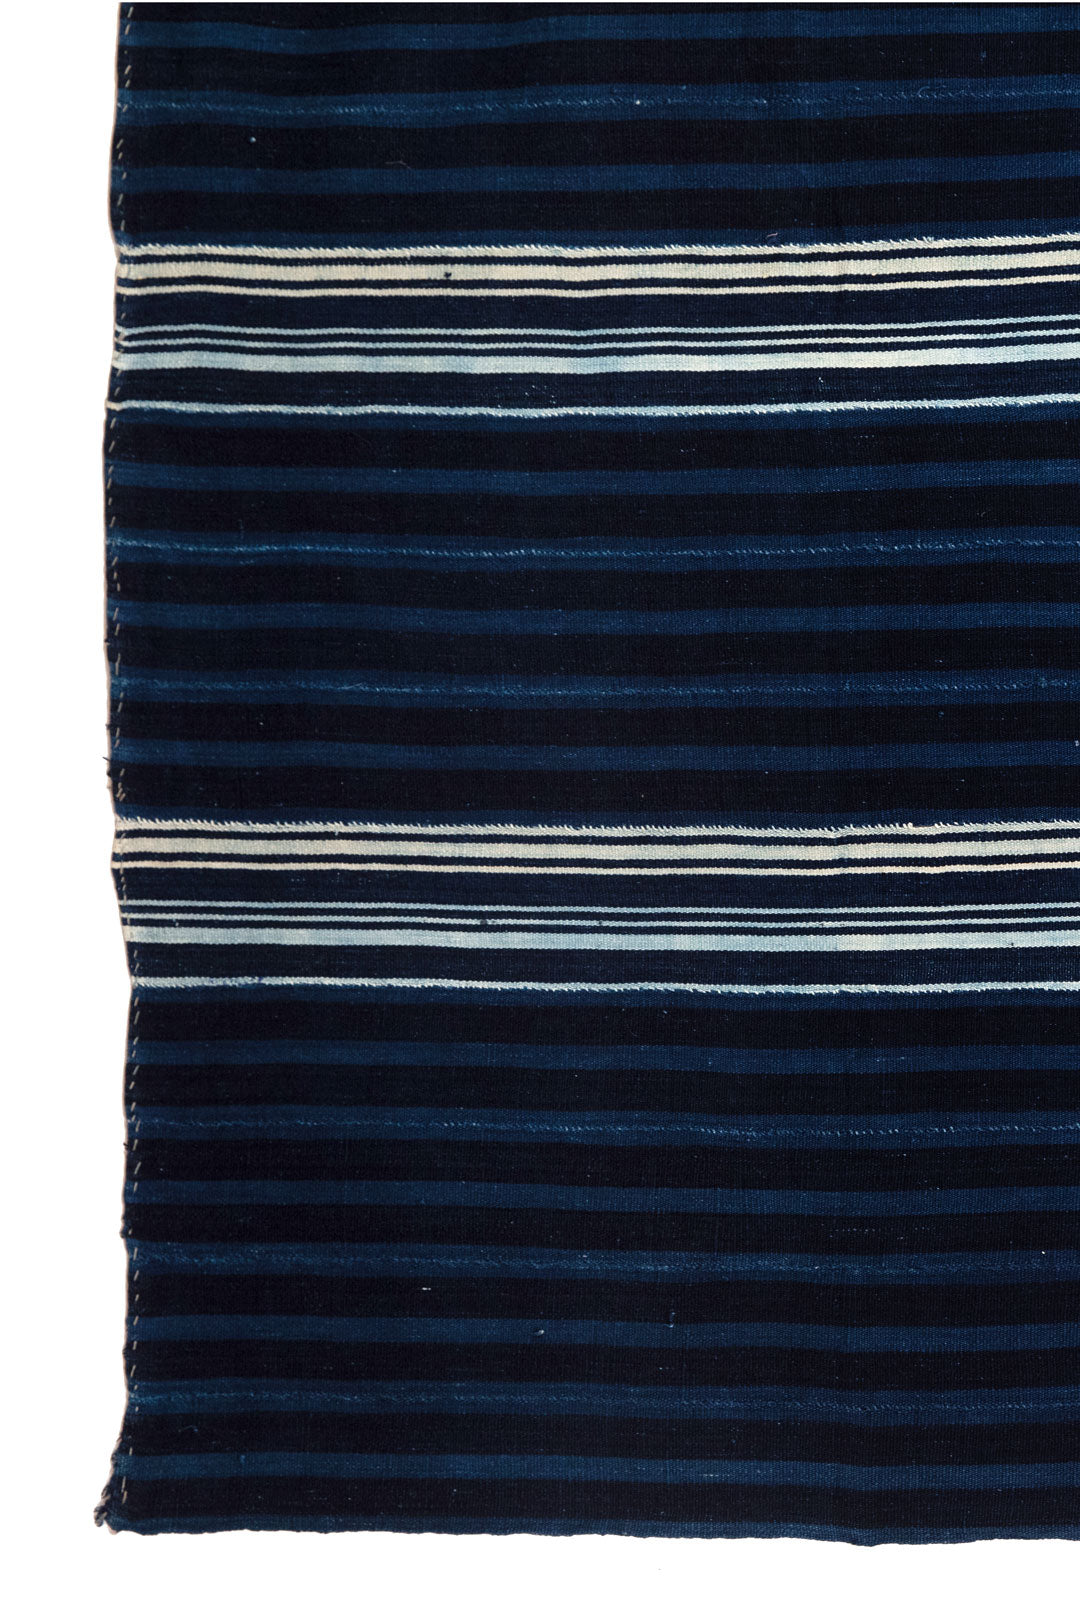 Baule Striped Blanket